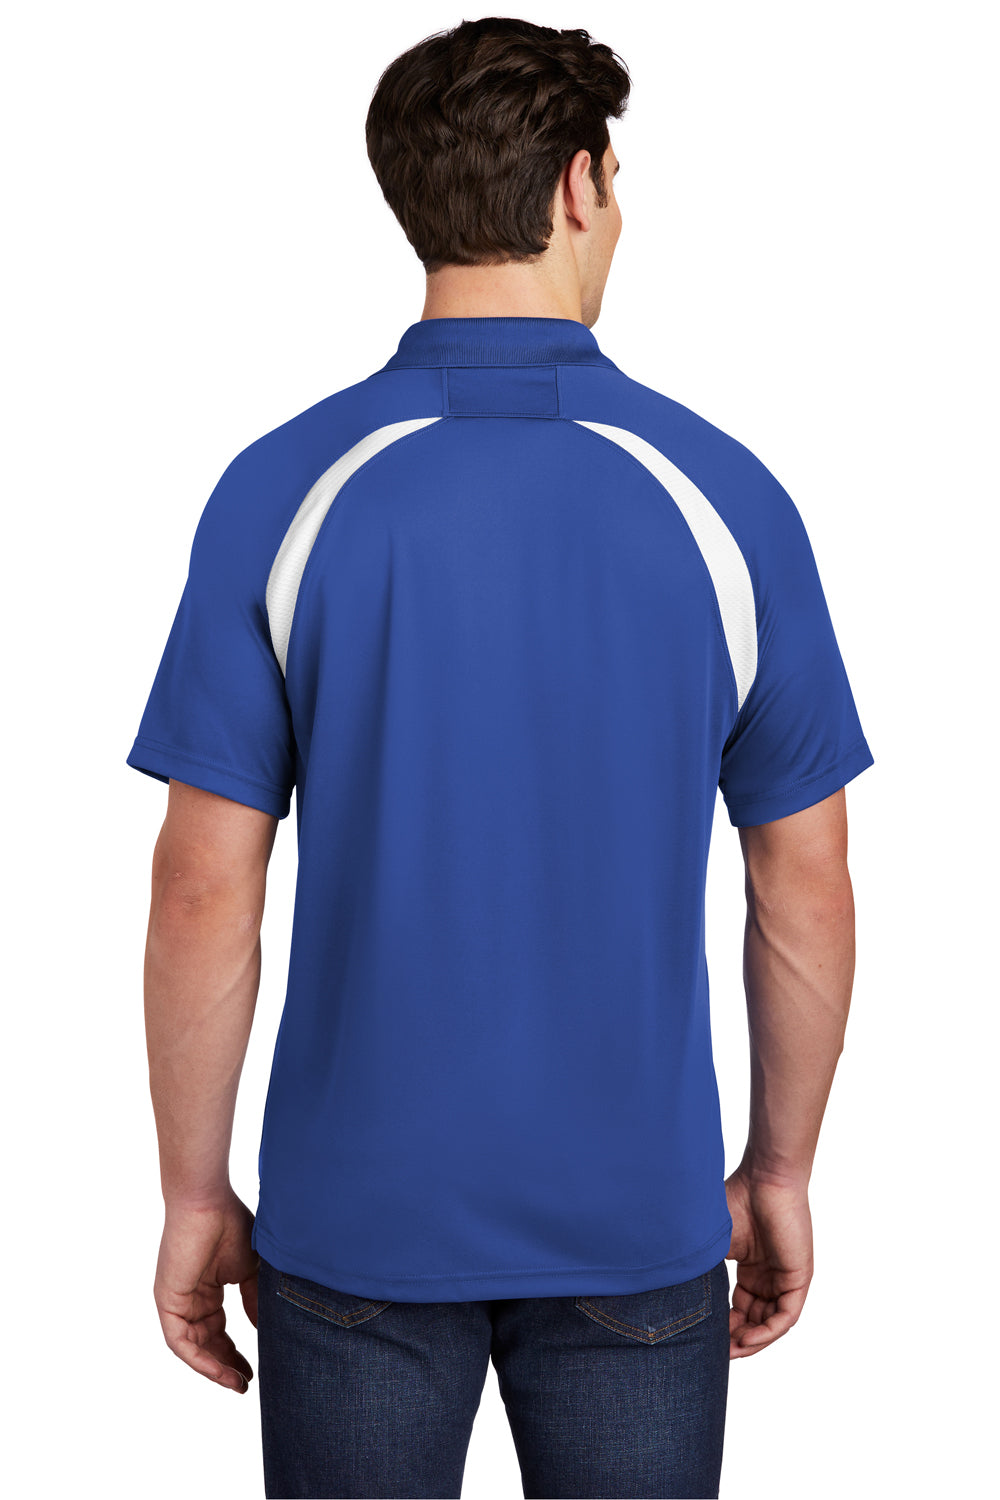 Sport-Tek T476 Mens Dry Zone Moisture Wicking Short Sleeve Polo Shirt Royal Blue Back